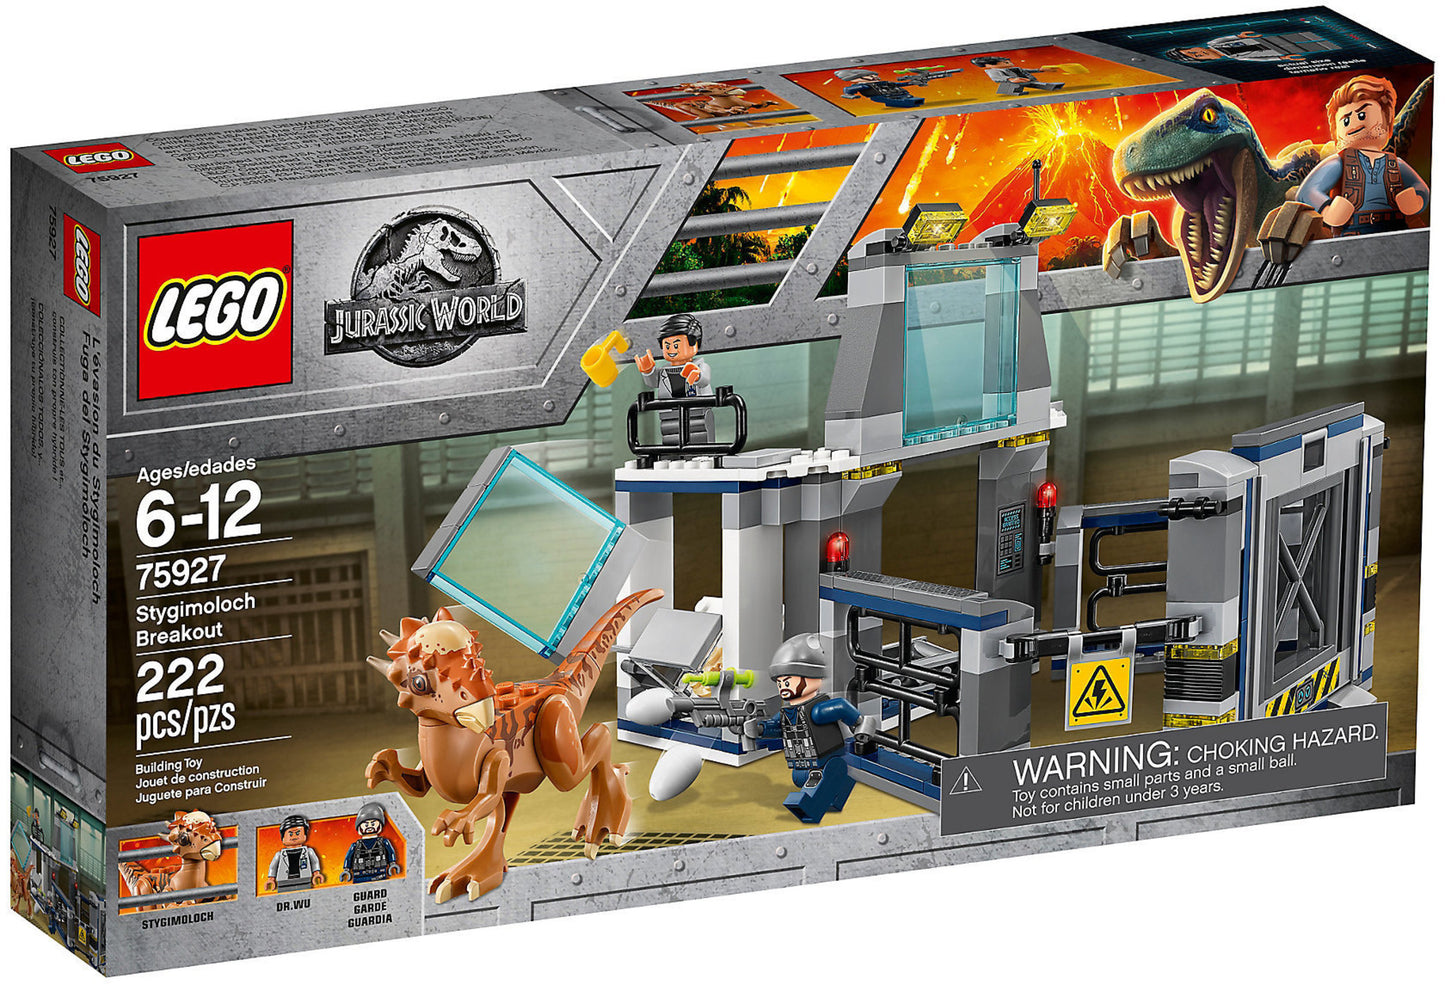 75927 LEGO Jurassic World - L'evasione Dello Stygimoloch